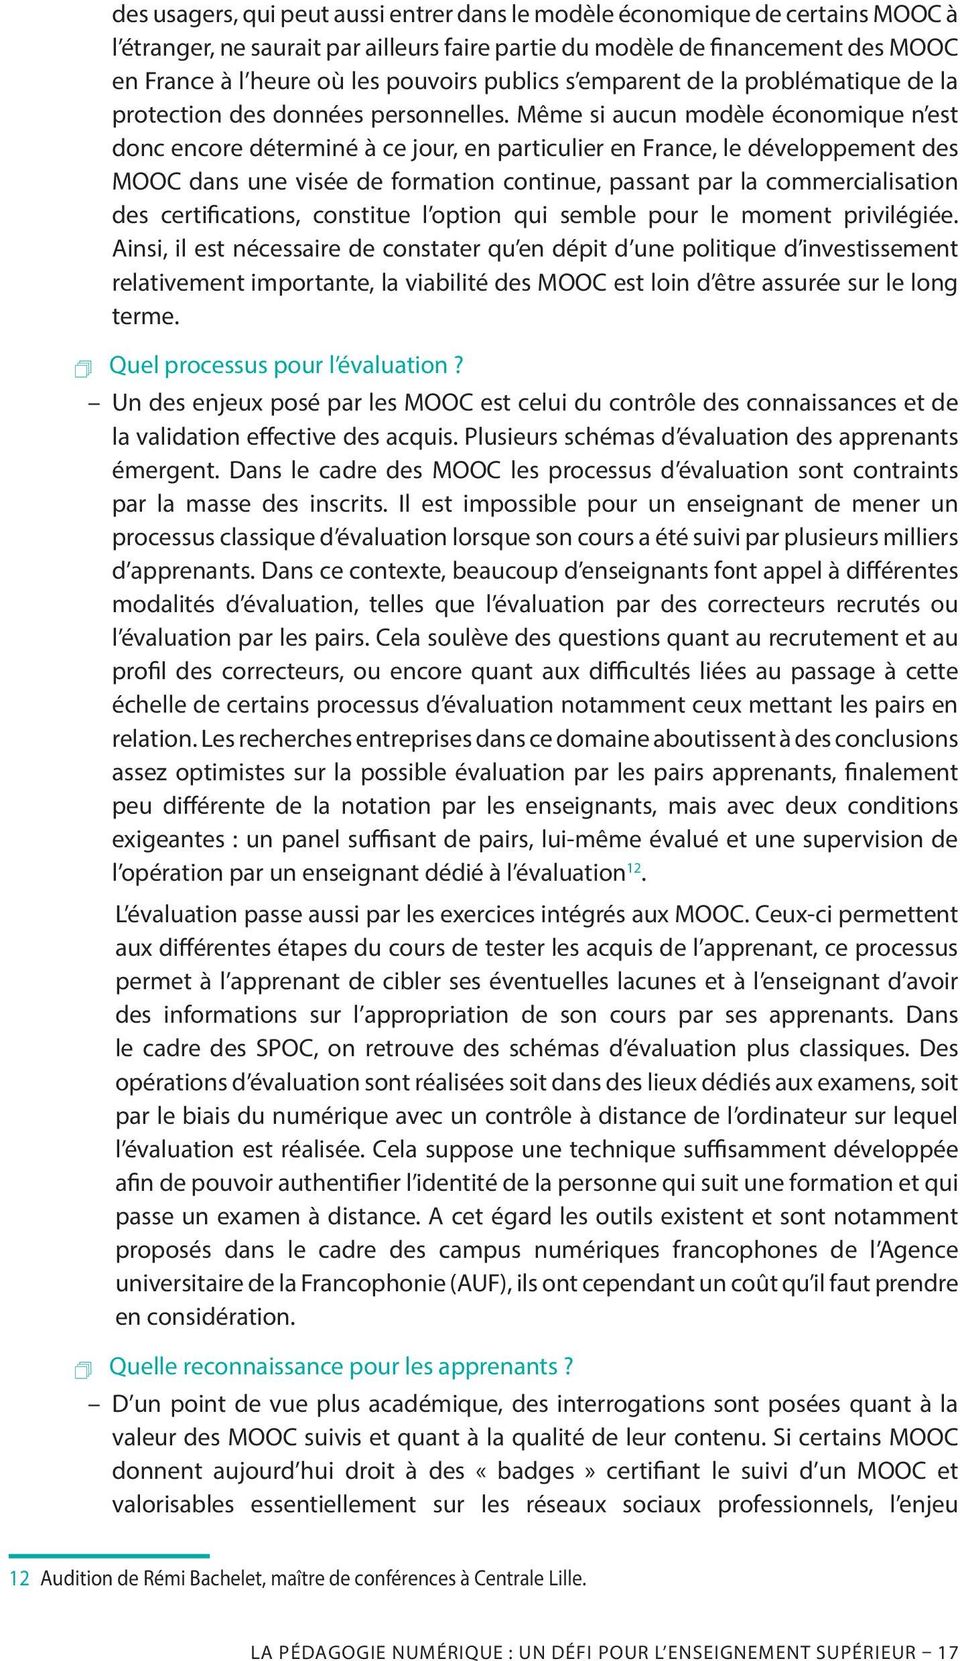 Même si aucun modèle économique n est donc encore déterminé à ce jour, en particulier en France, le développement des MOOC dans une visée de formation continue, passant par la commercialisation des